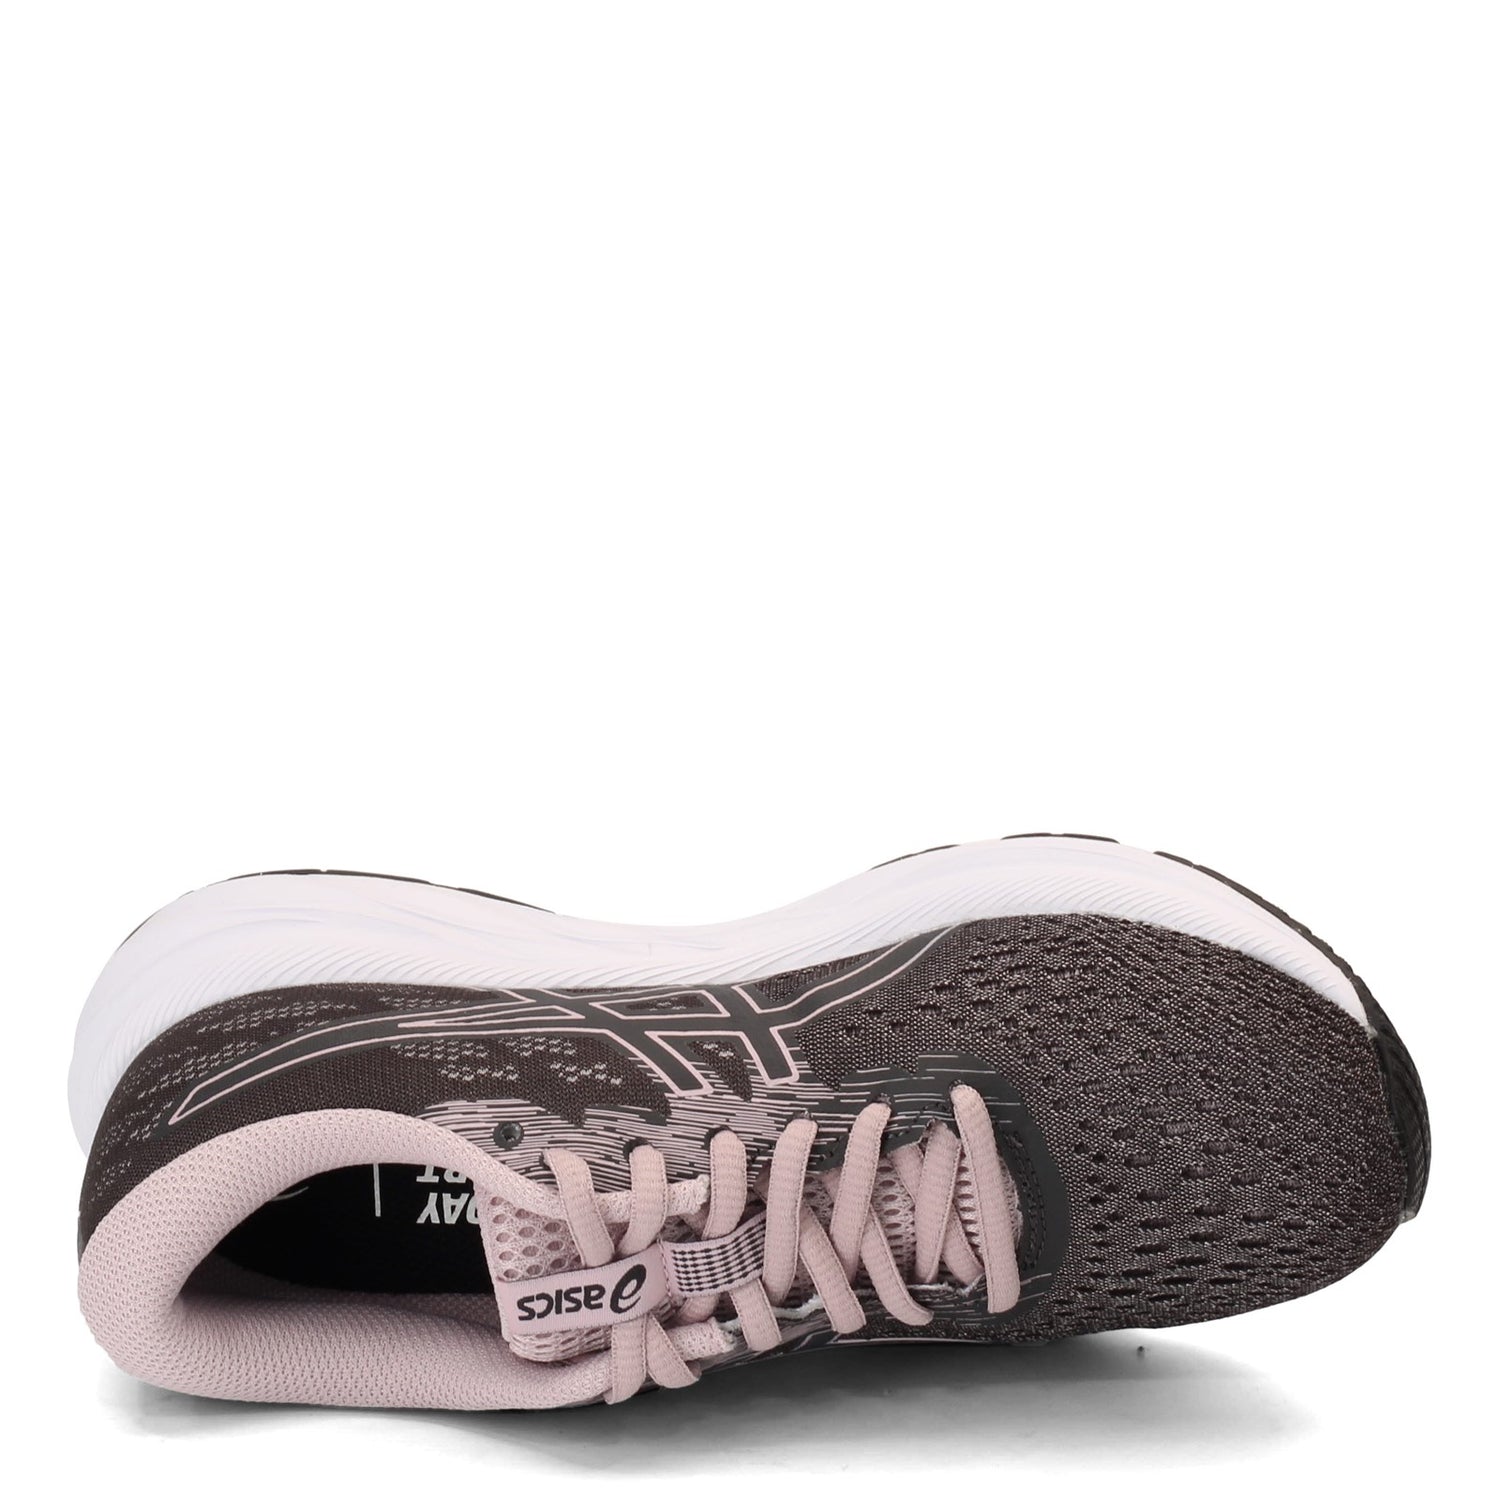 Peltz Shoes  Women's ASICS GEL-Excite 7 Running Shoe GRAY 1012A562-020